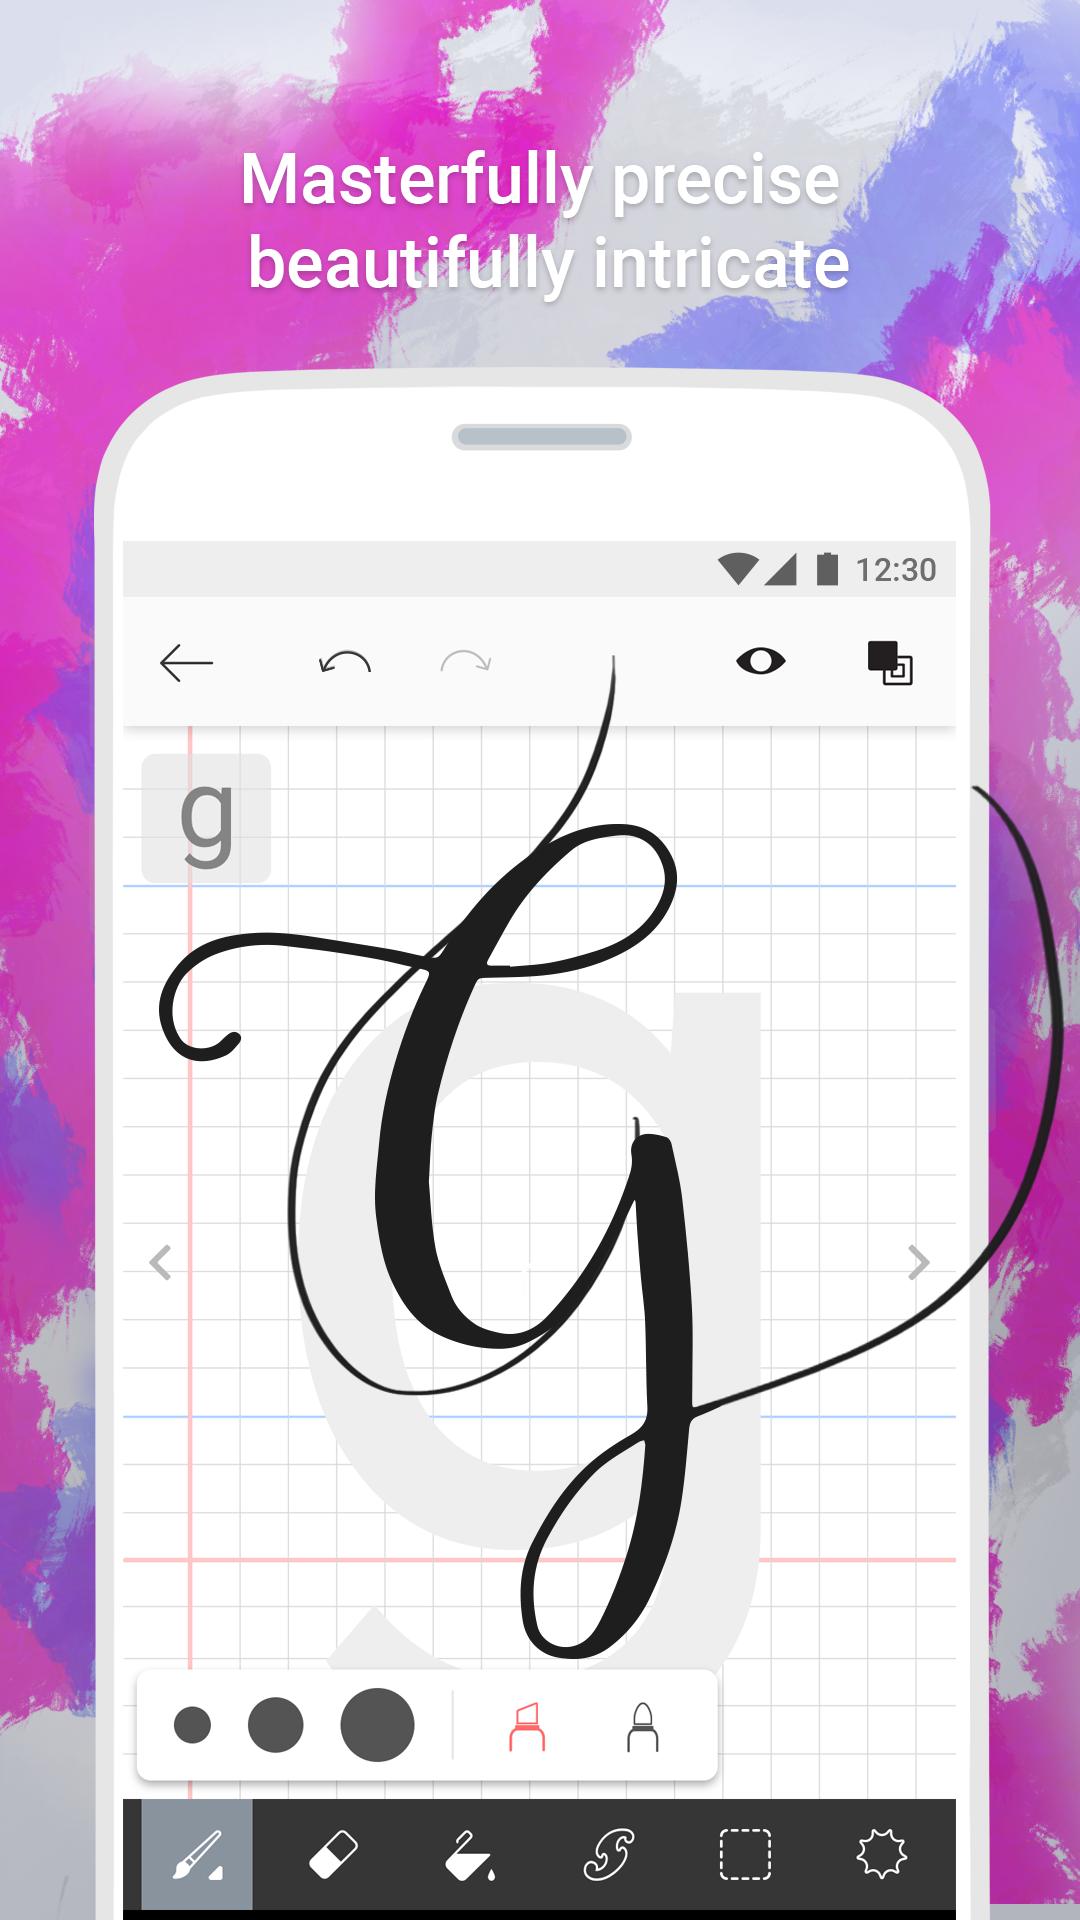 Fonty Draw and Make Fonts 1.6 Screenshot 4